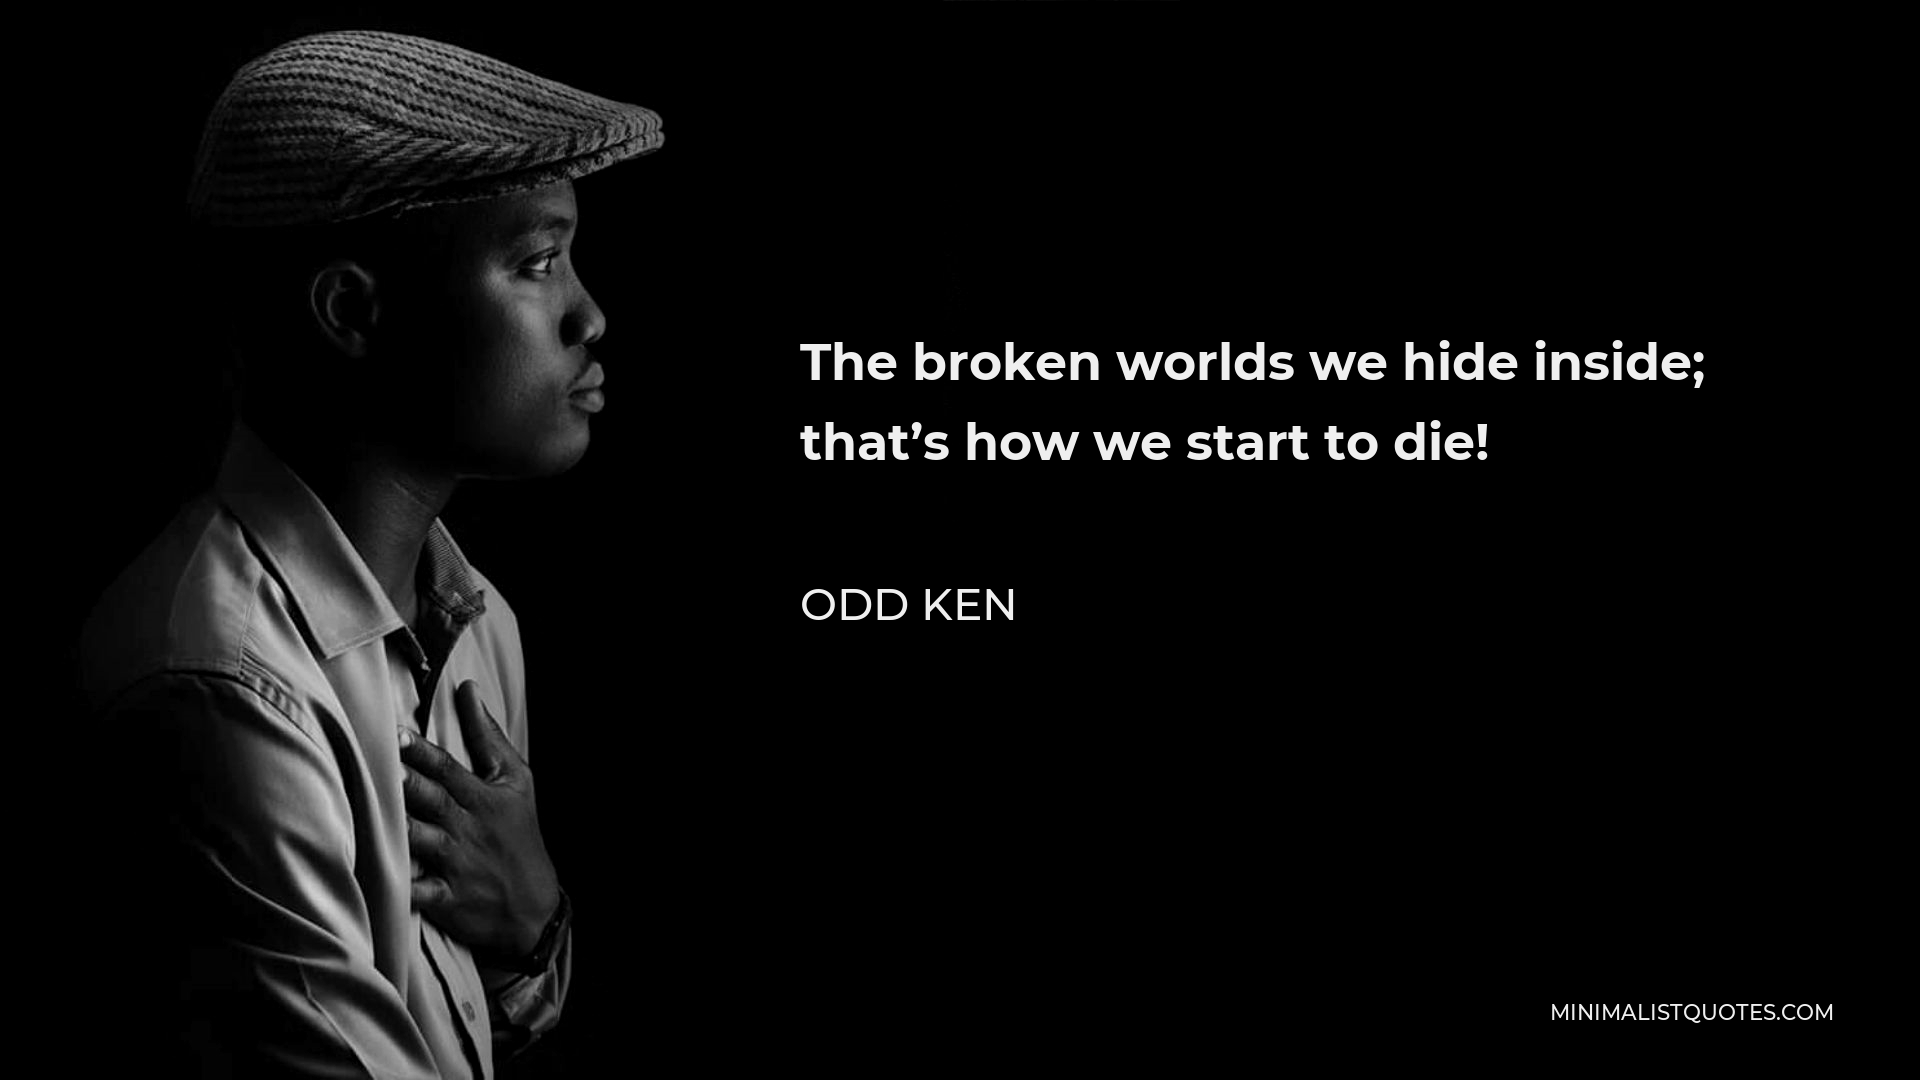 Odd Ken Quote - The broken worlds we hide inside; that’s how we start to die!